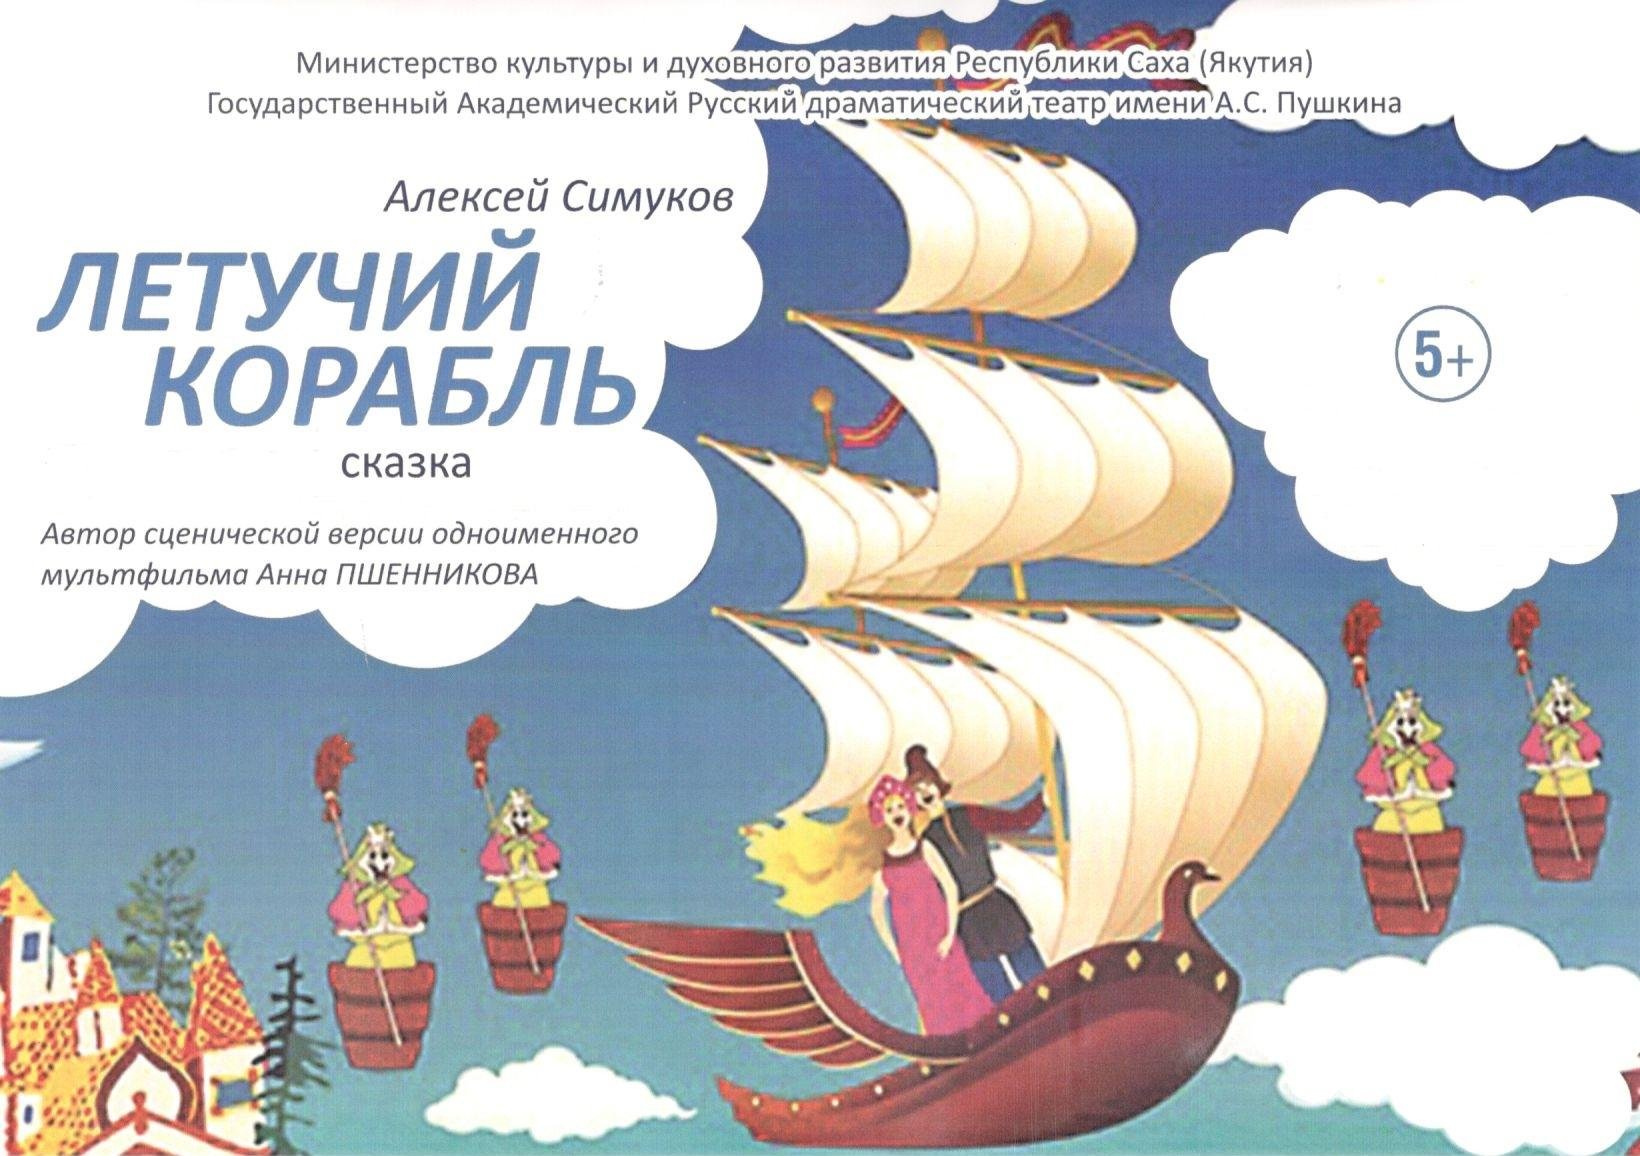 Иви летучий корабль. Иллюстрация к сказке Летучий корабль.